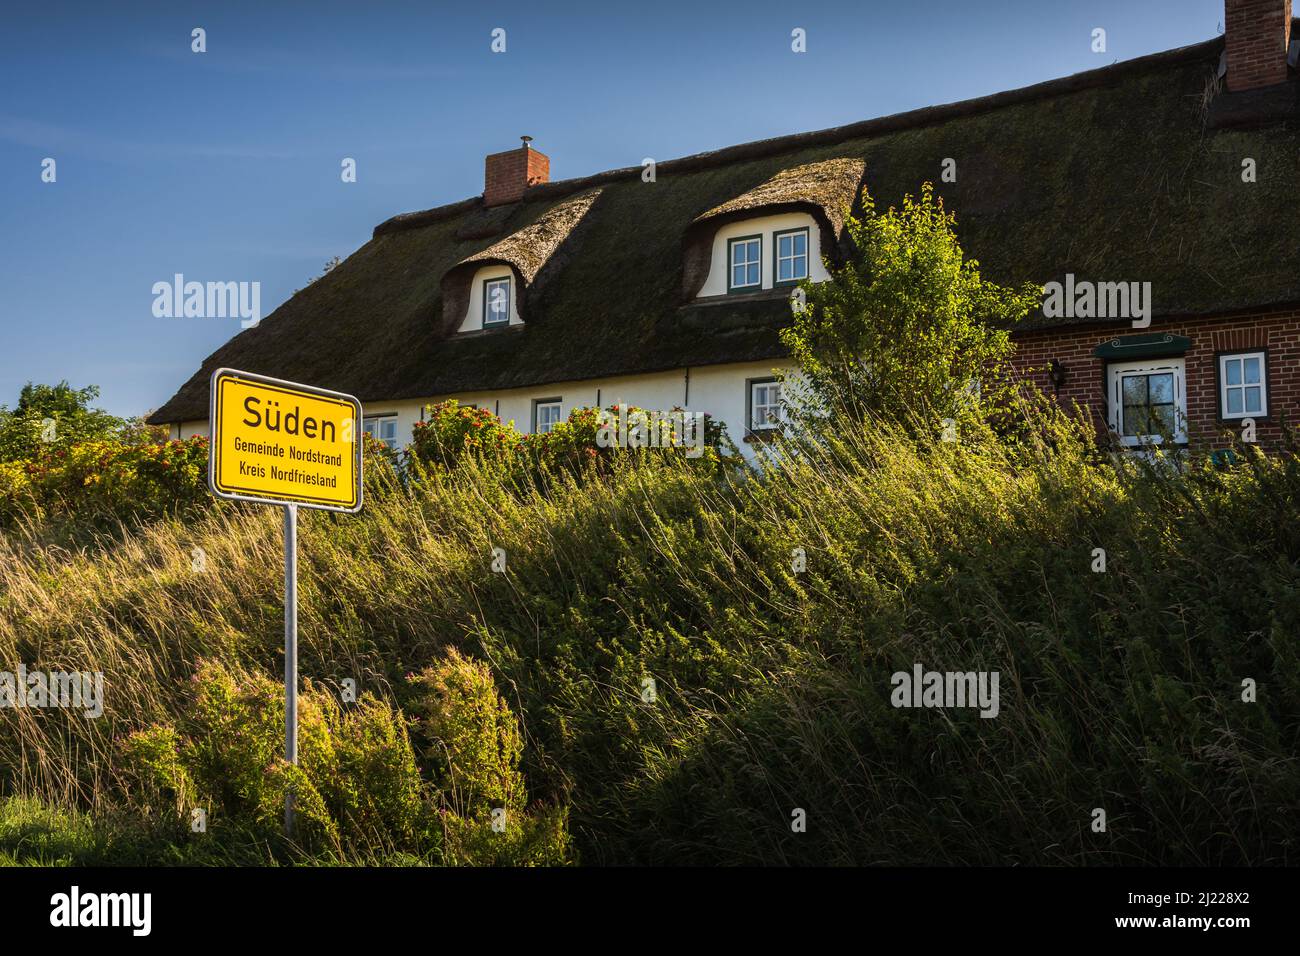 Casa tradizionale con tetto di paglia e segno della città, Nordstrand, Frisia settentrionale, Schleswig-Holstein, Germania Foto Stock